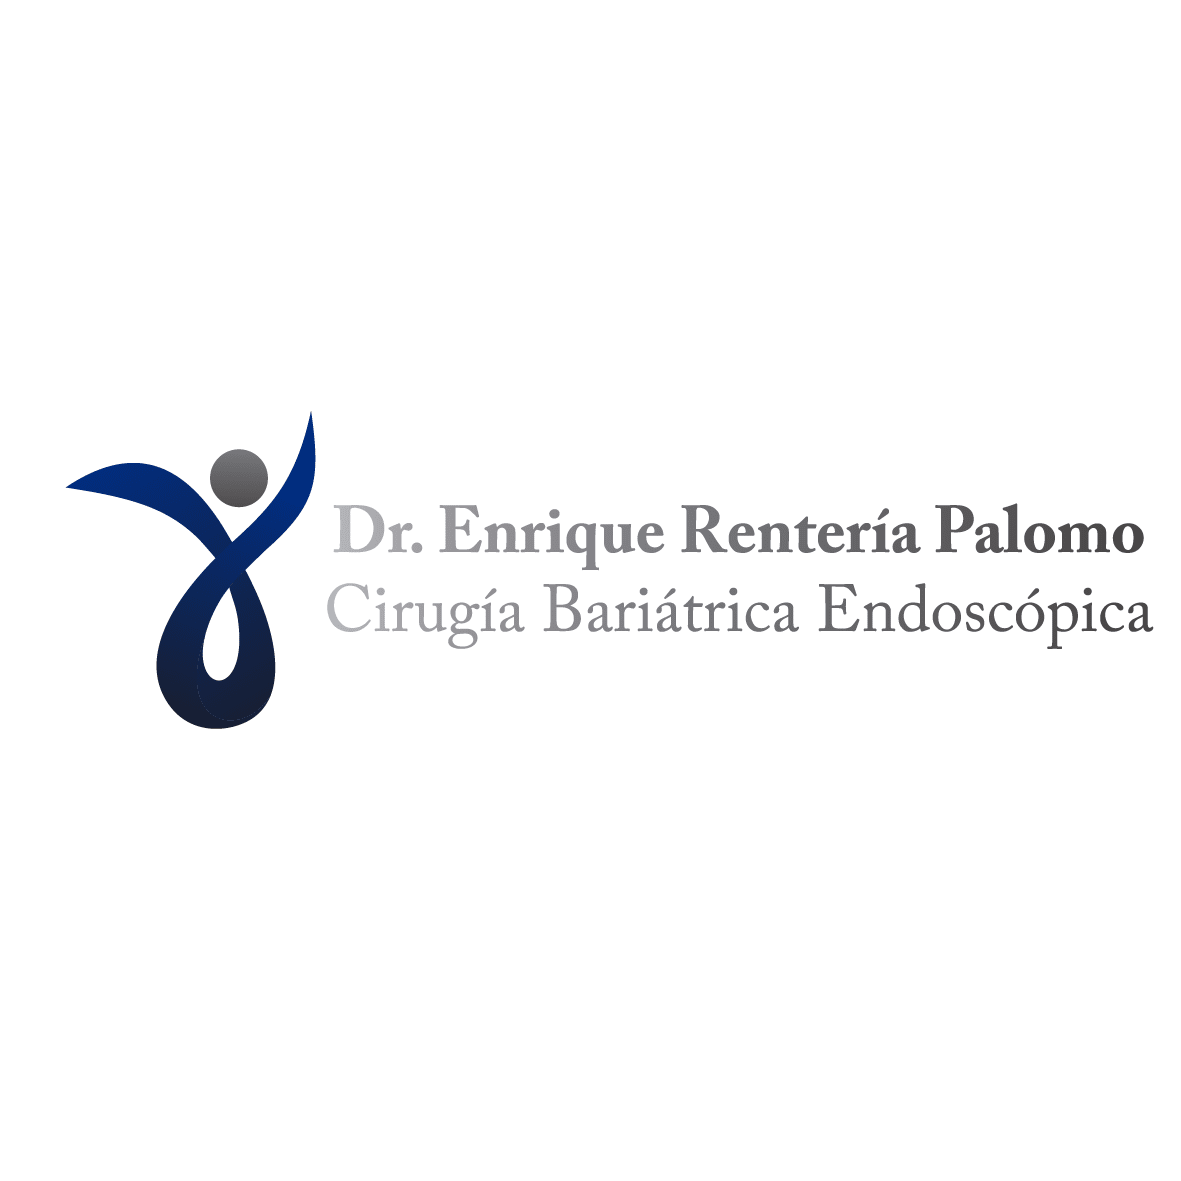 Dr. Enrique Rentería Palomo                                                                        Cirugía General / Cirugía Bariátrica Endoscópica